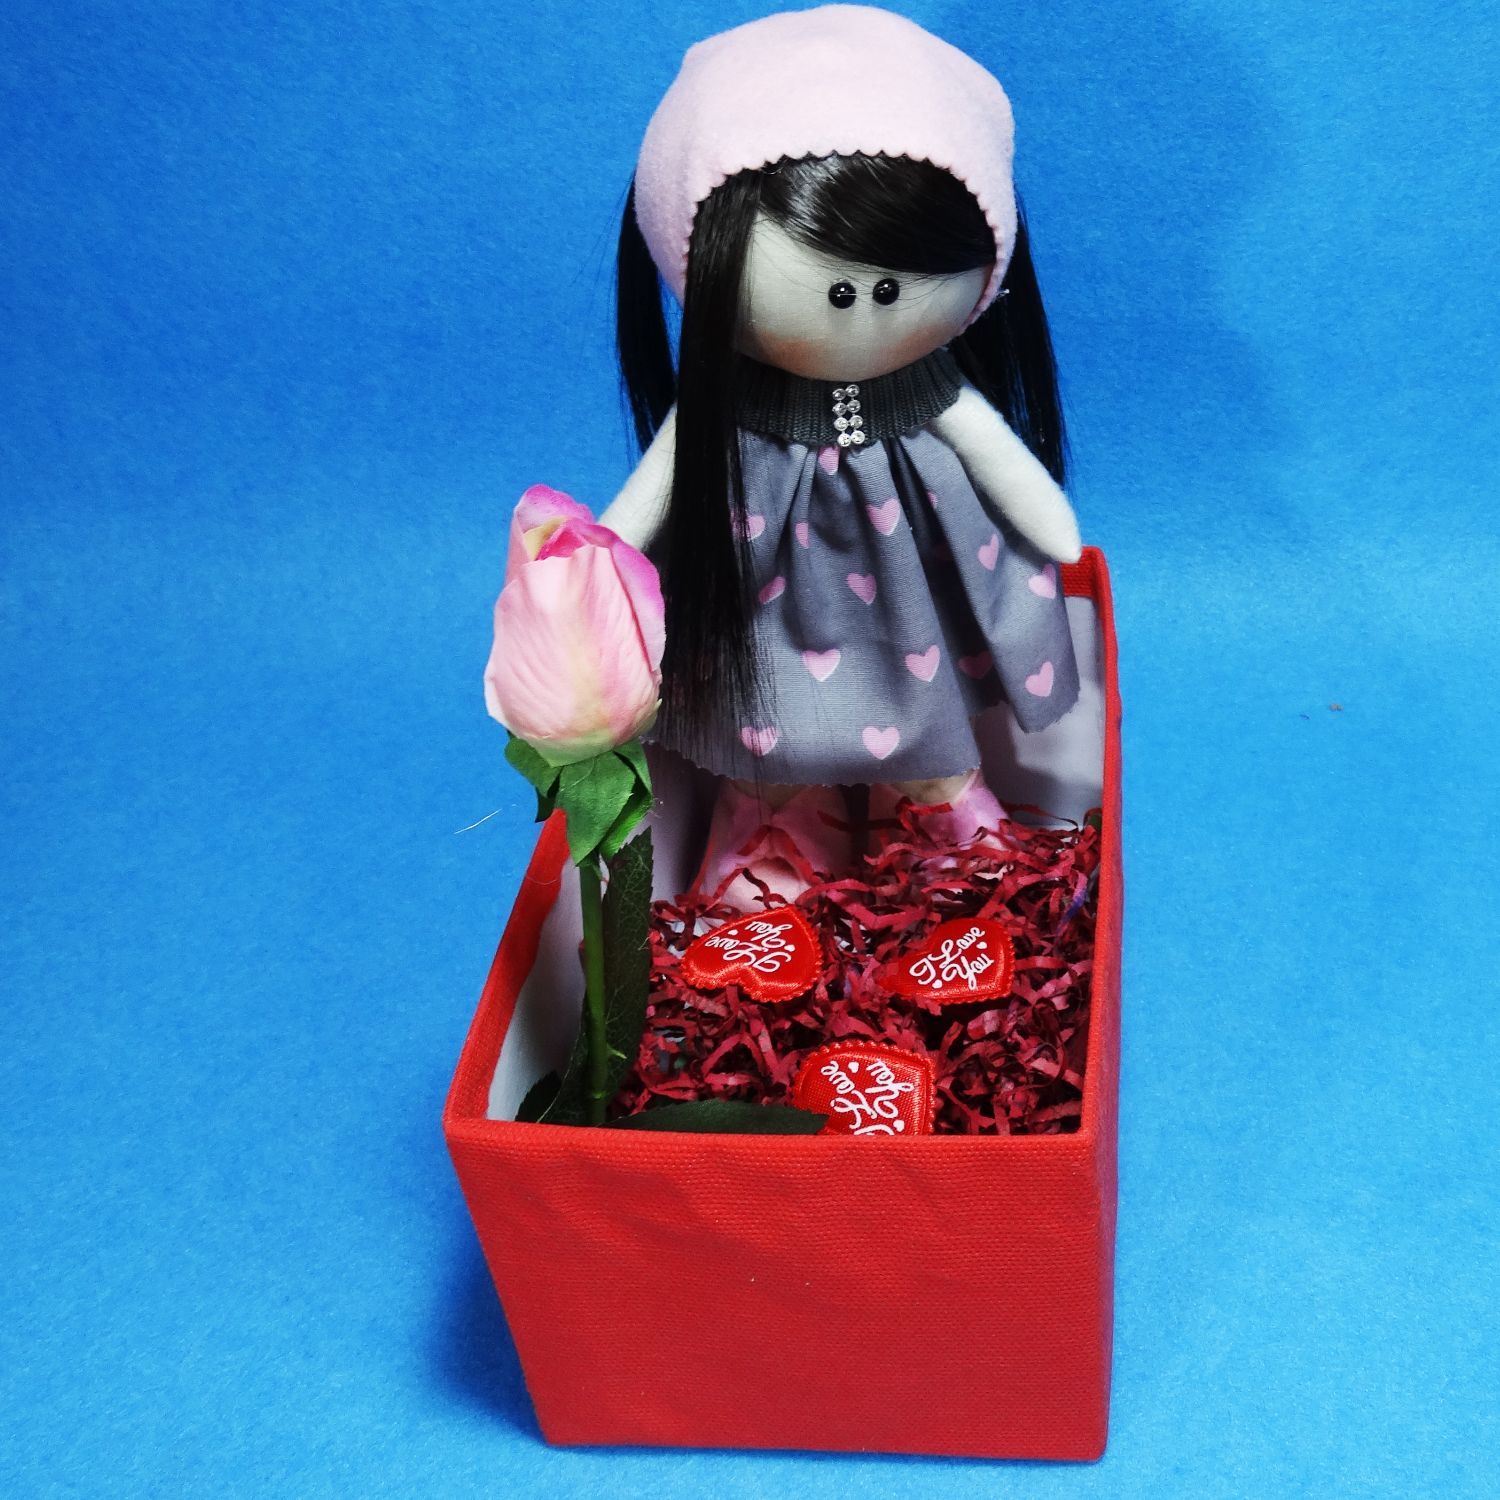 ست هدیه عروسک نیازشاپ مدل دختر روسی کد RU1400 -  - 3